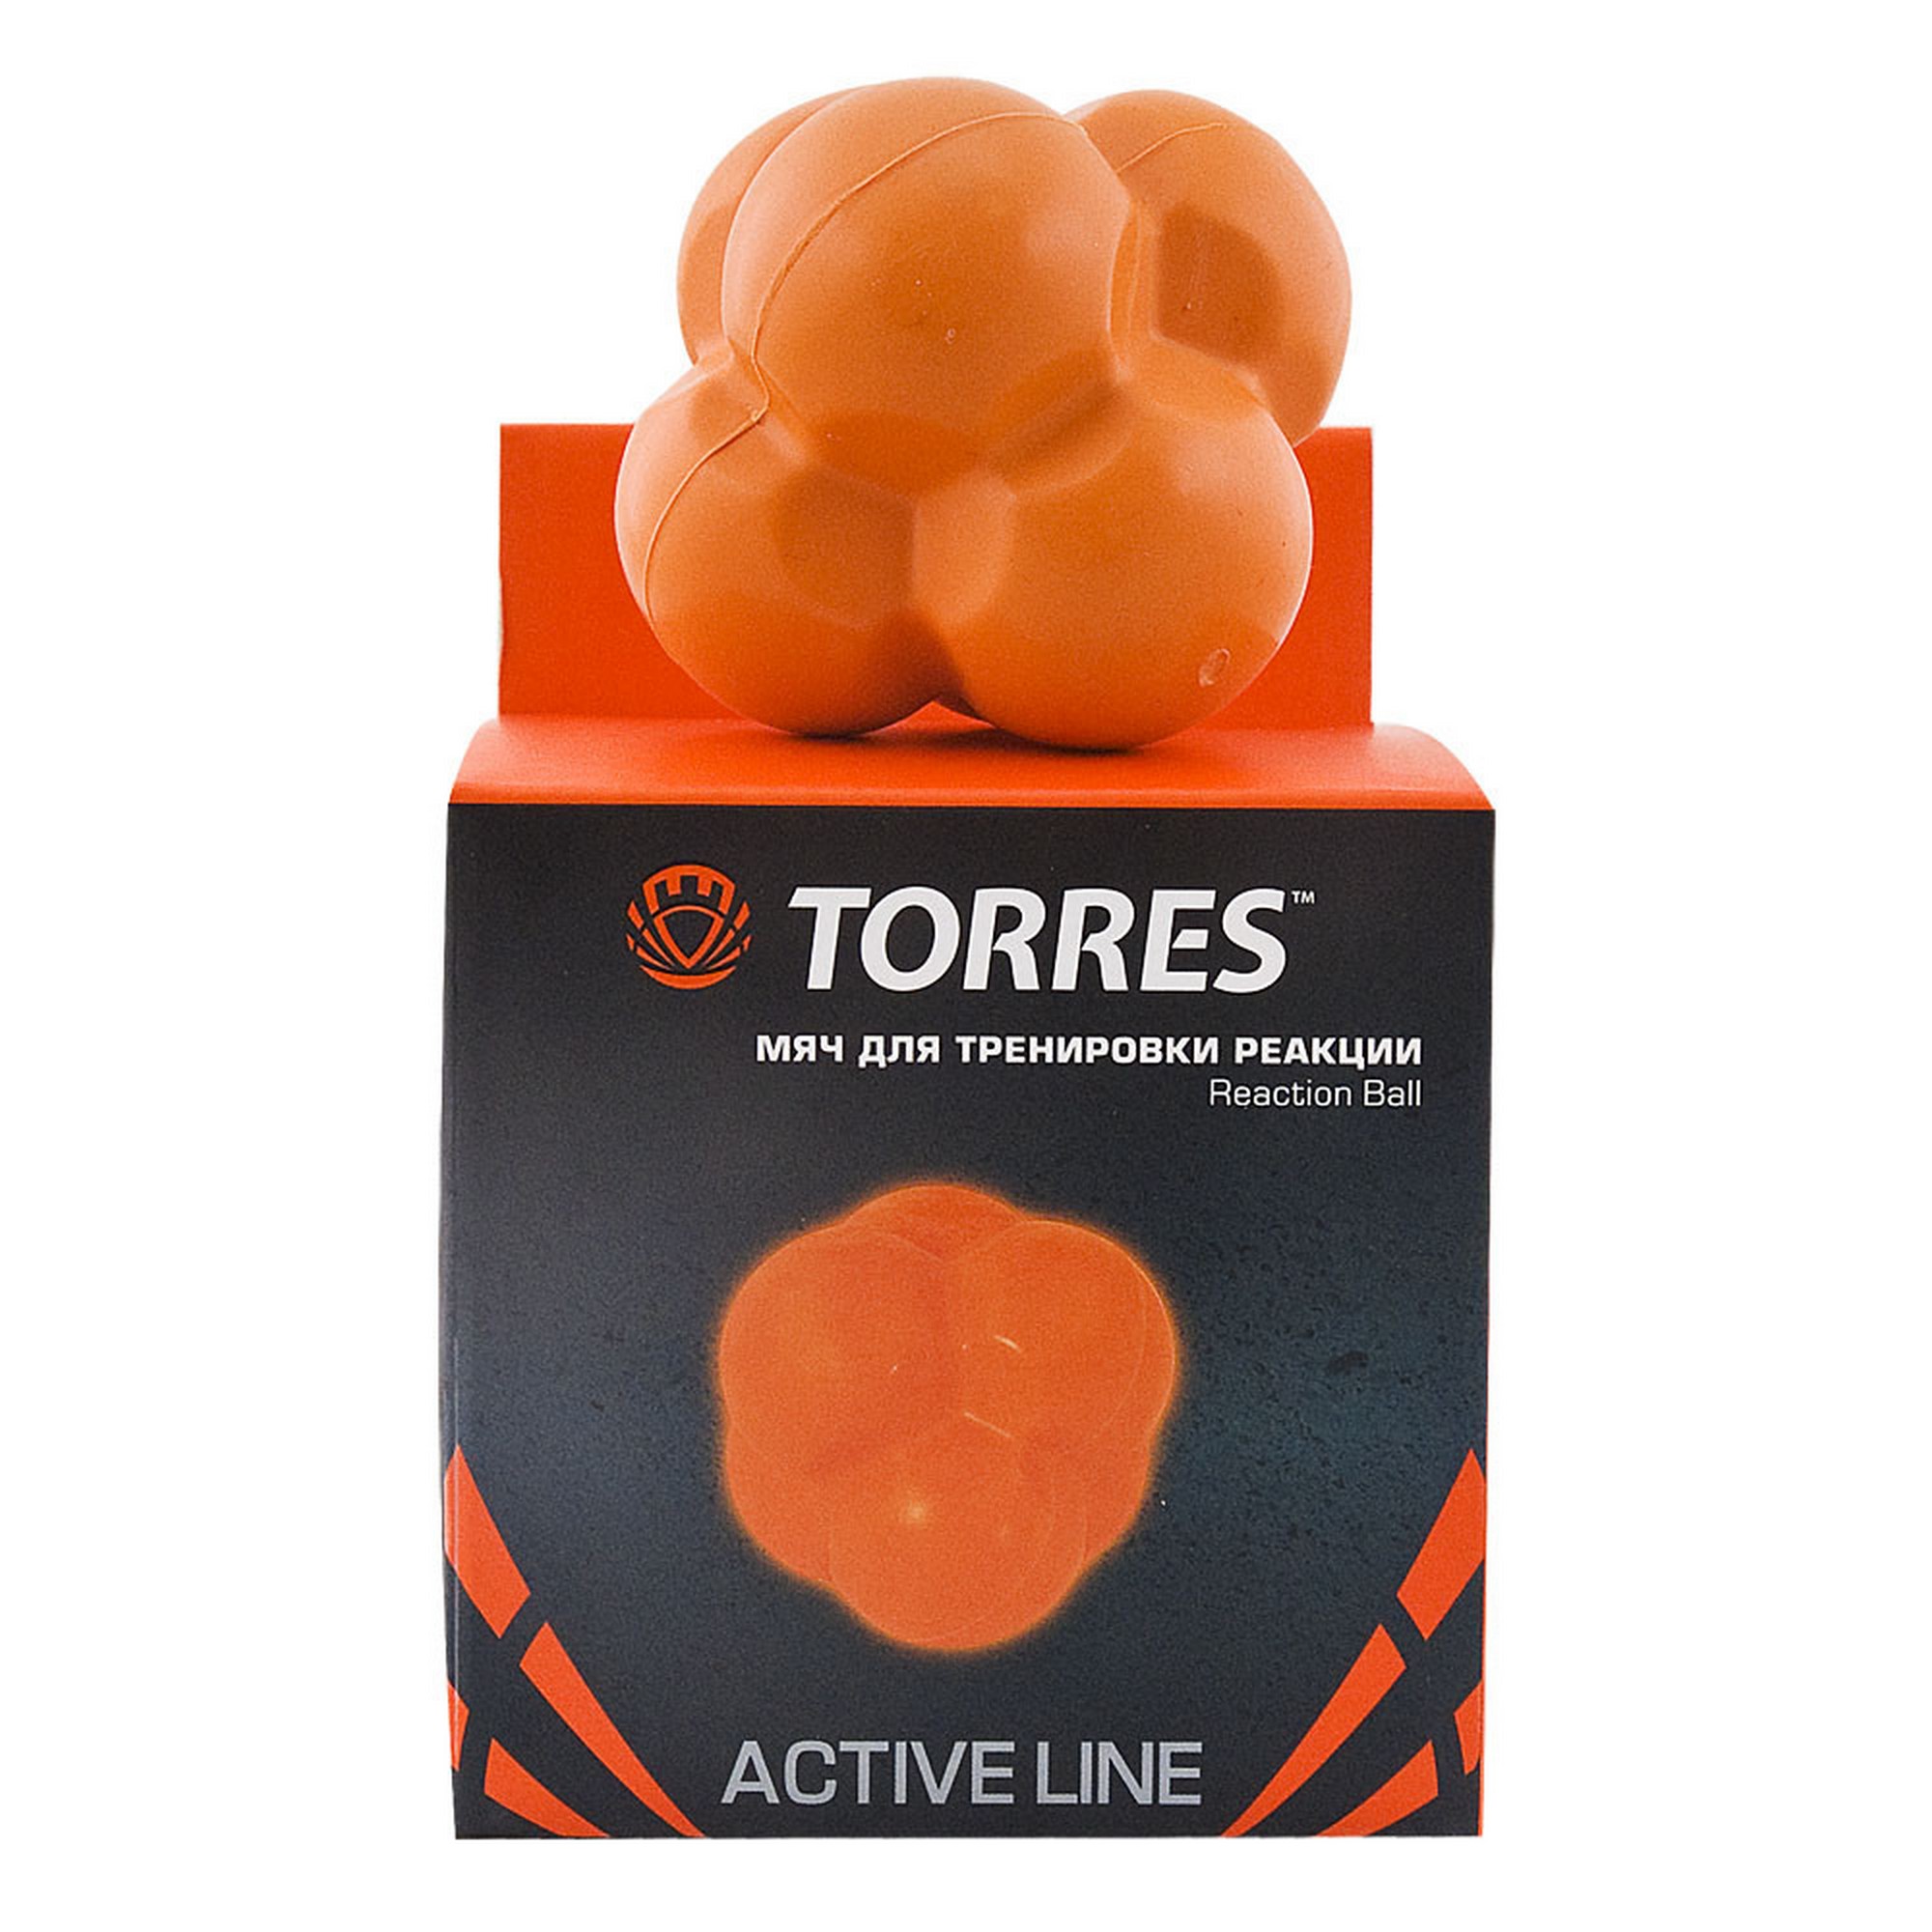 Мяч для тренировки реакции Torres Reaction ball TL0008 оранжевый,  - купить со скидкой